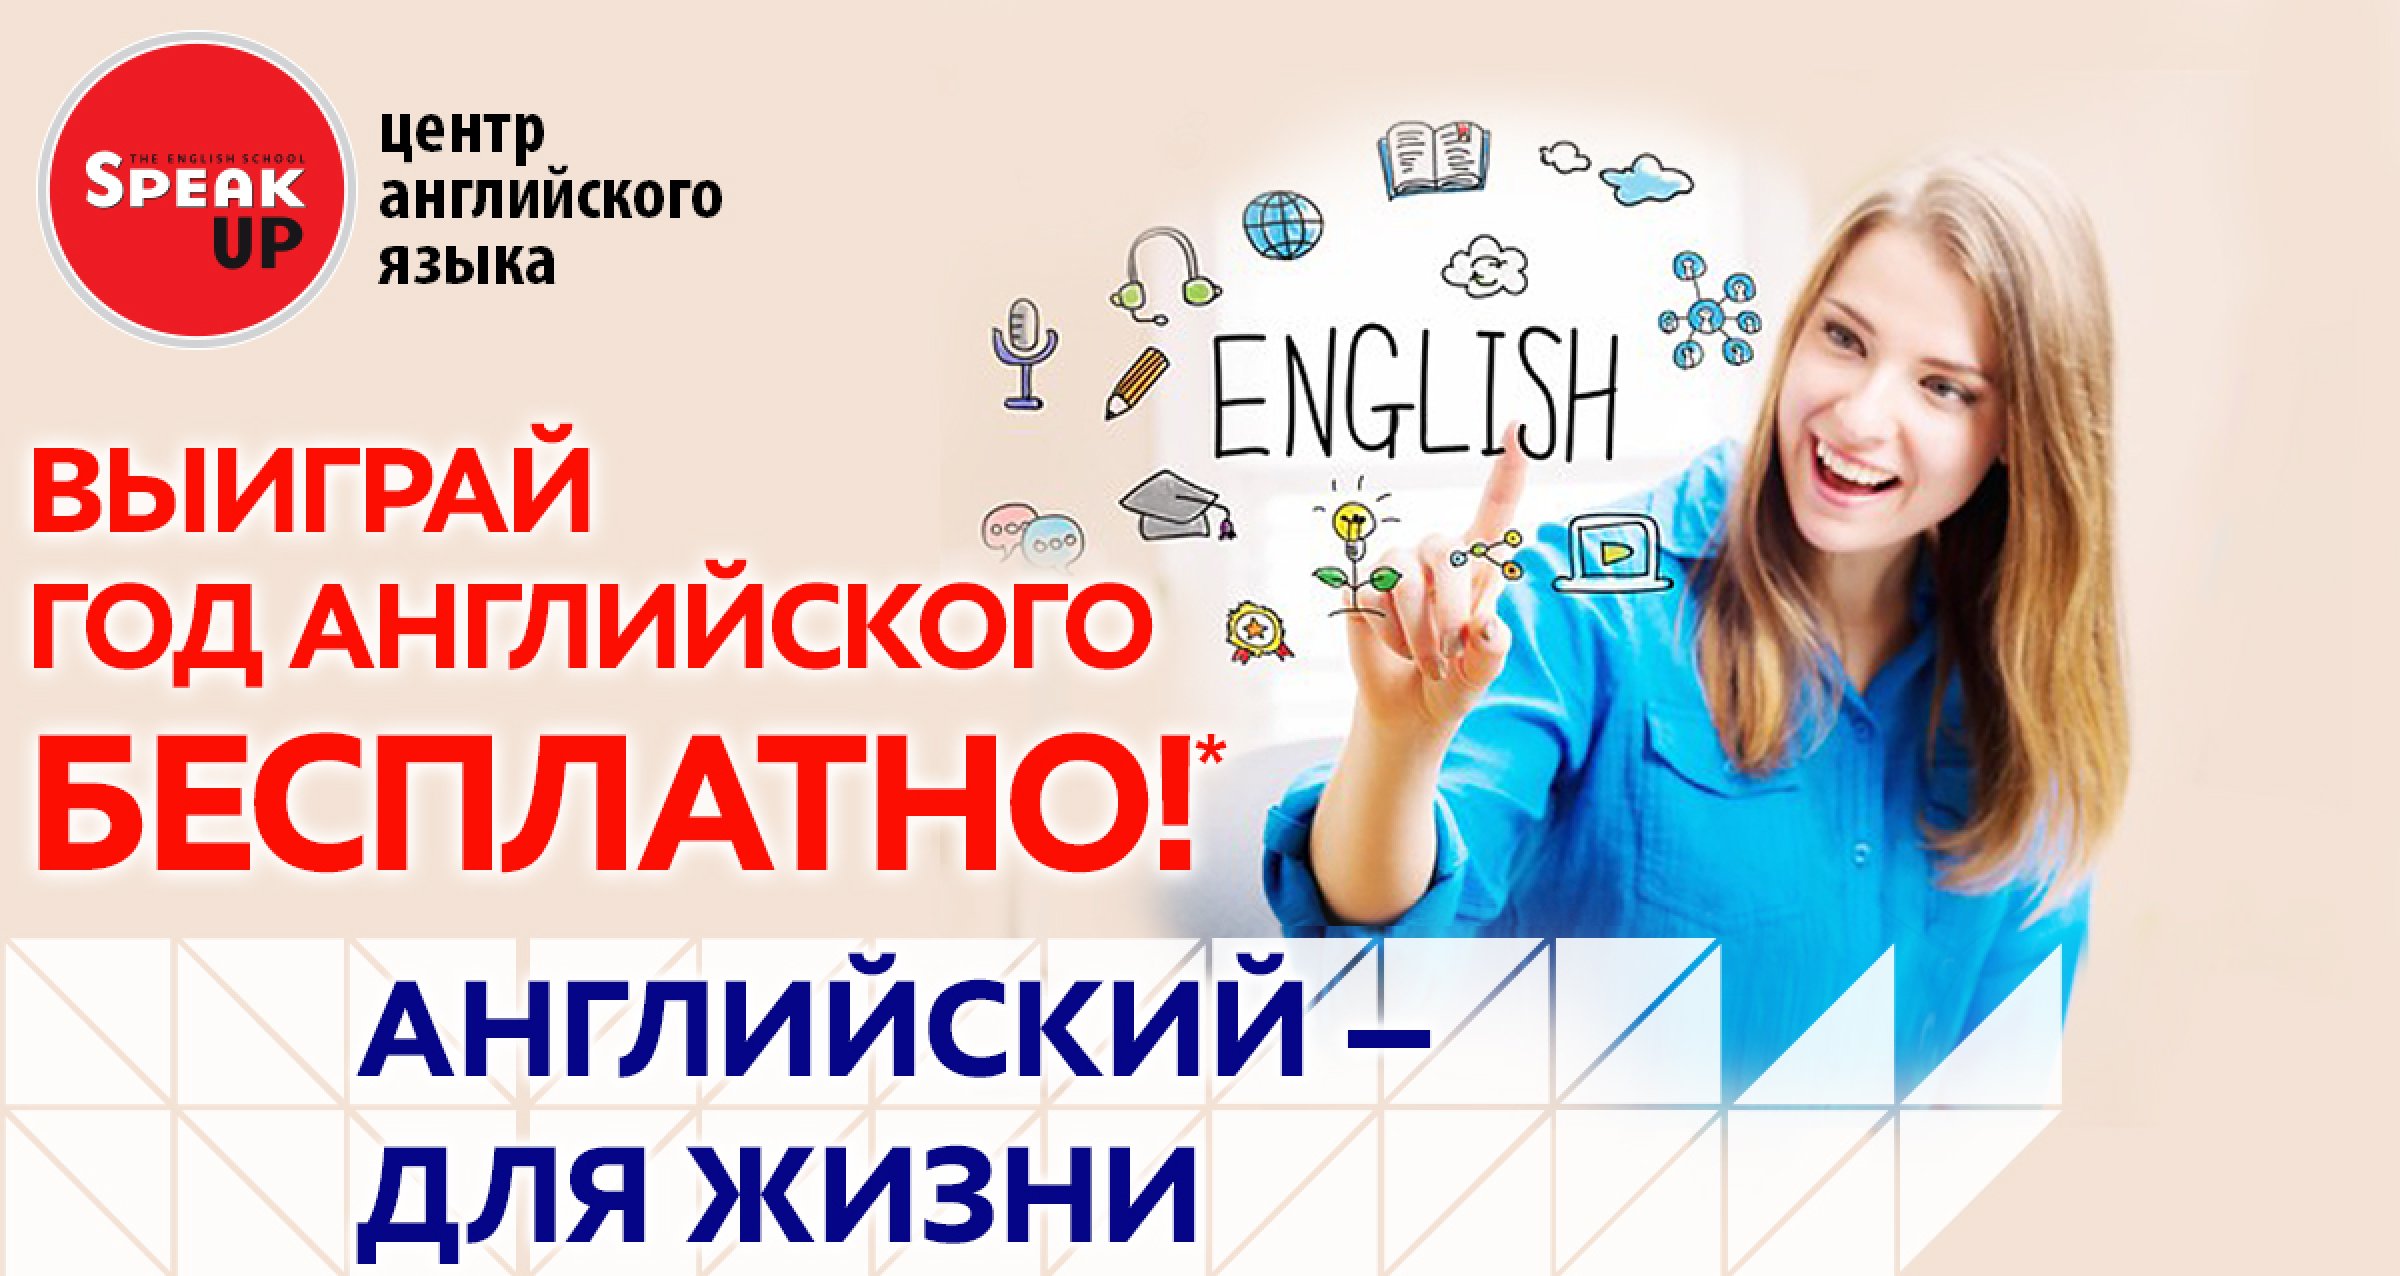 Слушай учи английский. Реклама изучения английского языка. Реклама курсов английского. Курсы английского языка реклама.